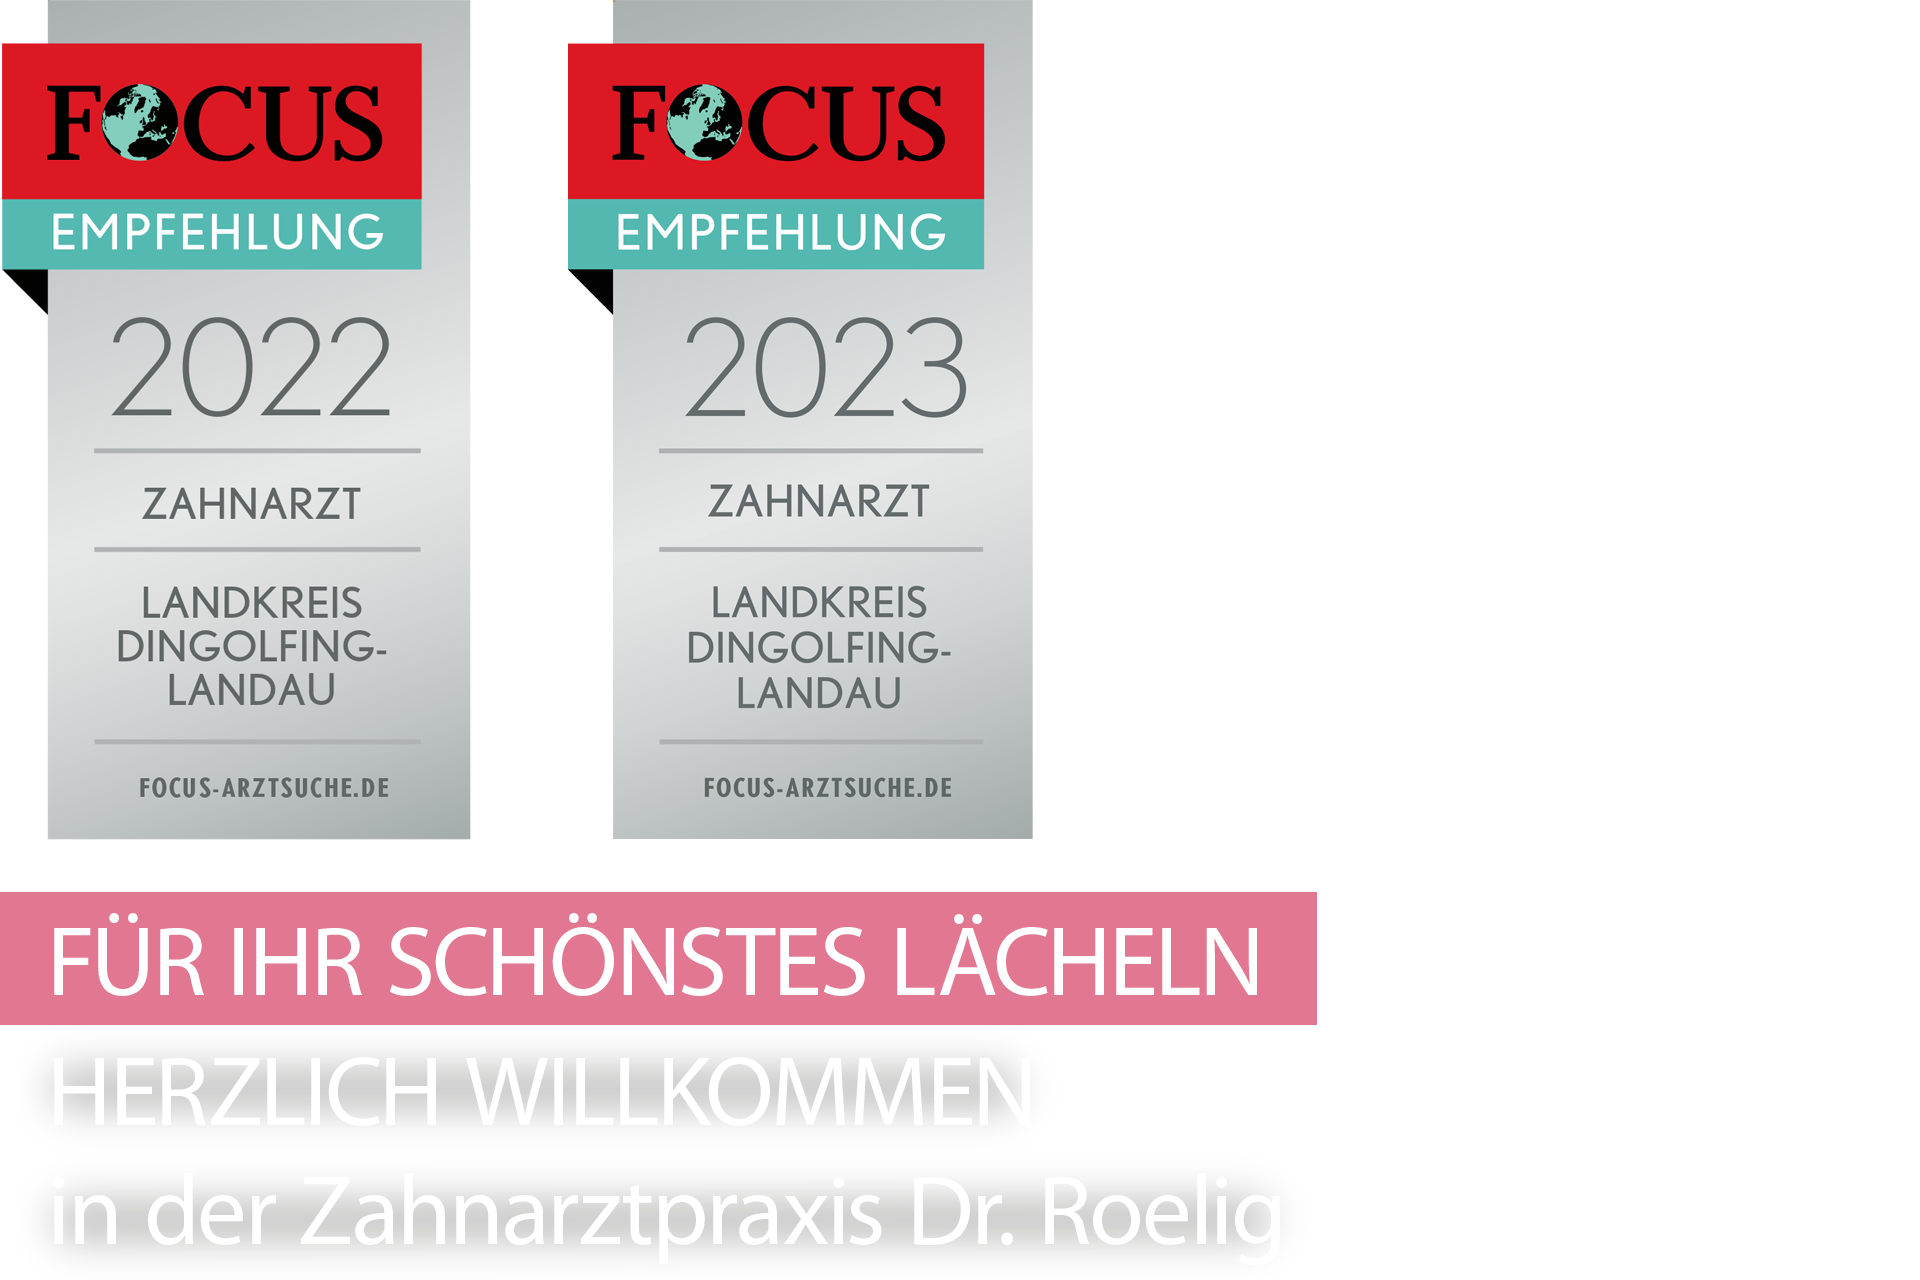 FOKUS Empfehlung 2022/2023 - Landkreis Dingolfing-Landau